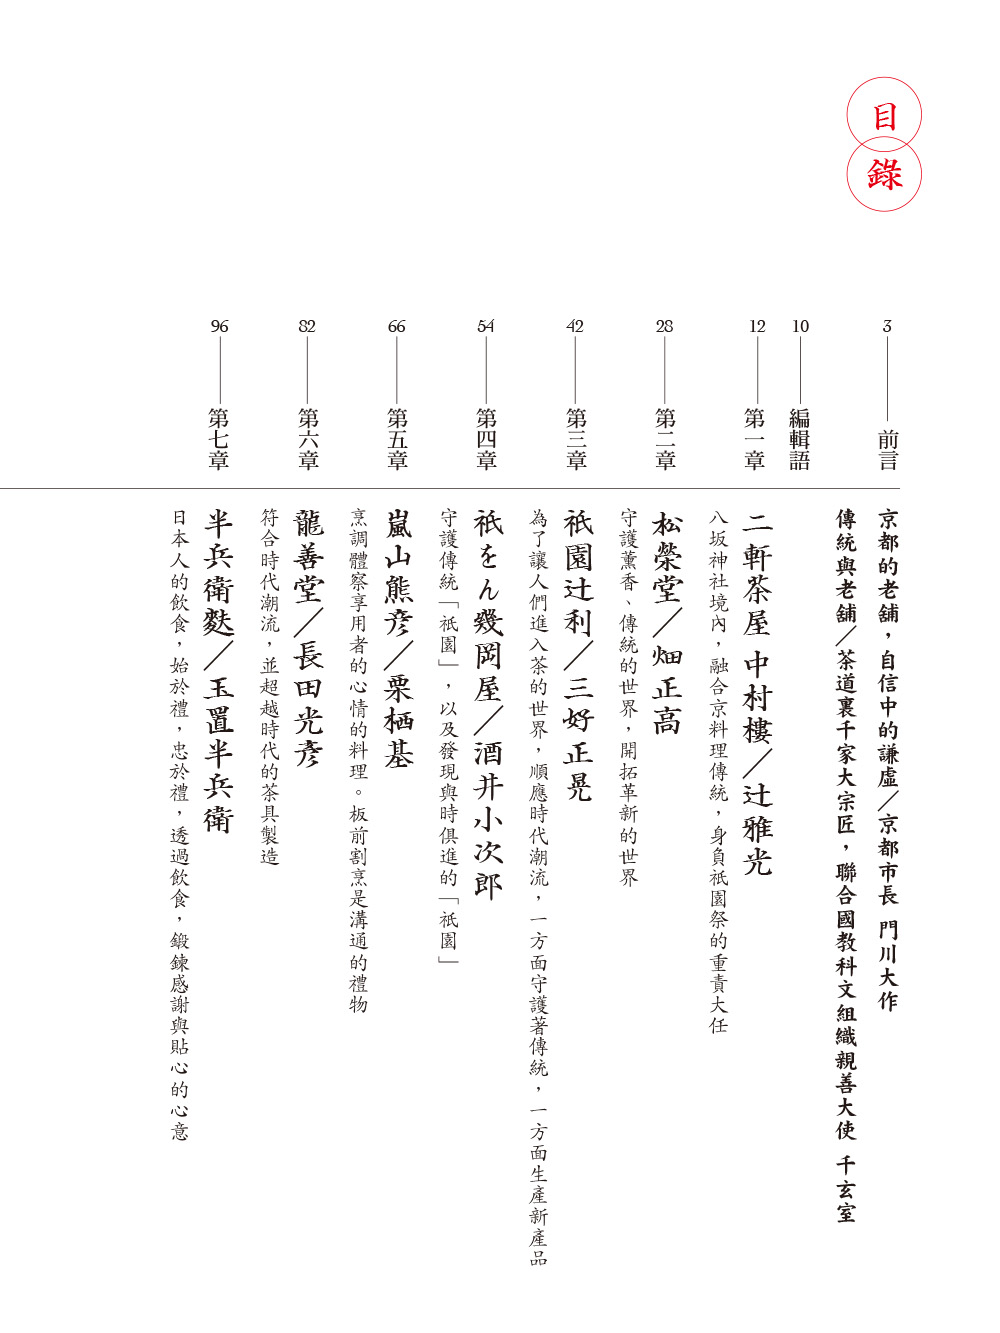 ►人文史地►暢銷書► 京都百年老舖：發現老店中的祖傳祕技、經營哲學、生活理念，深入京都人食衣住的根源